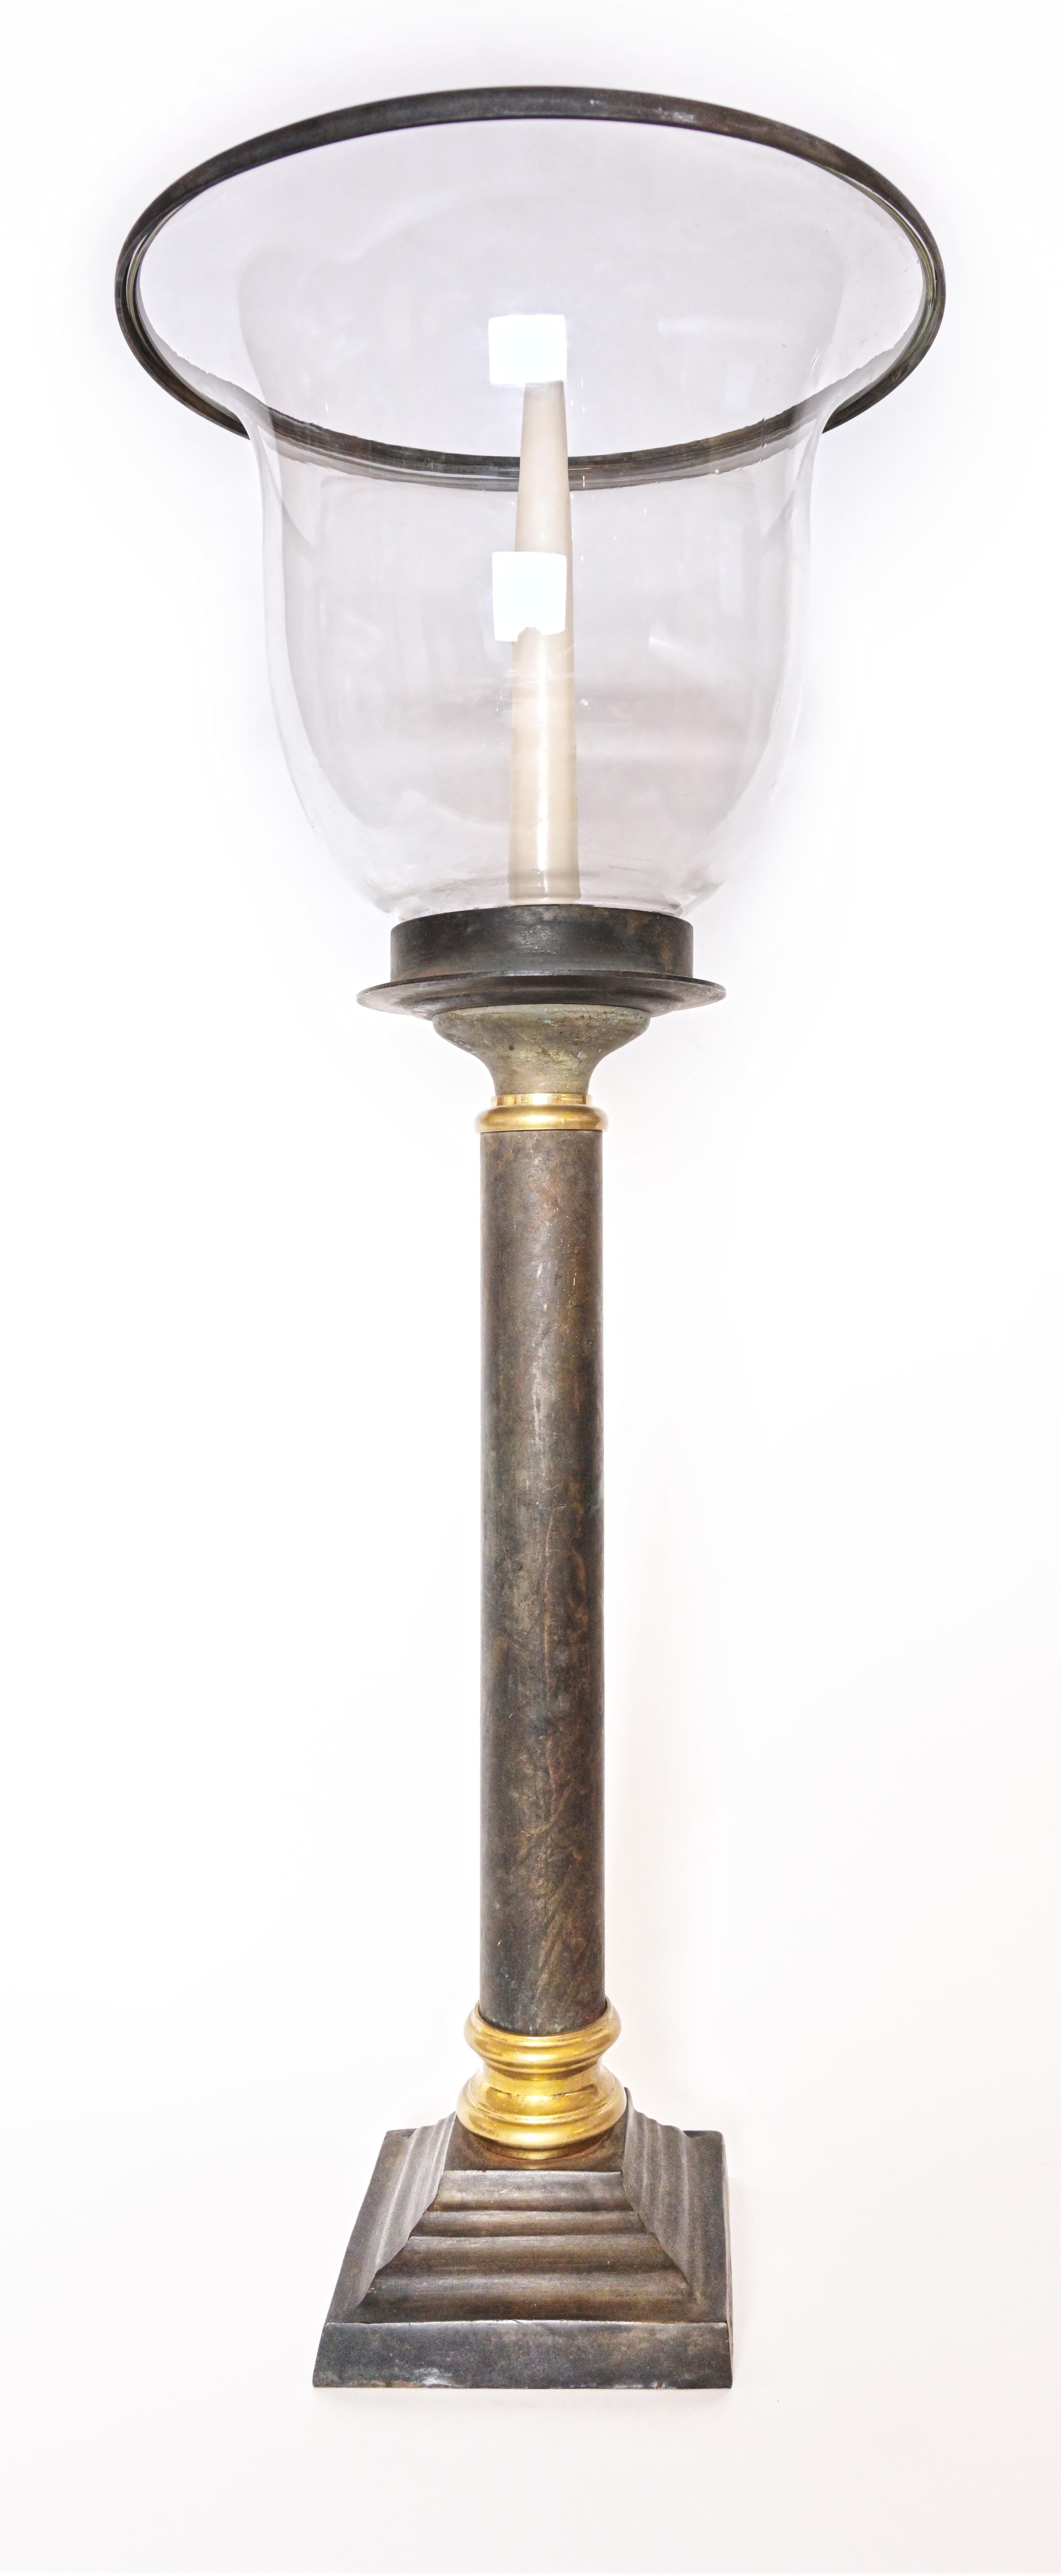  Ein Paar Votivlaternen mit einem umgedrehten Glasschirm, der auf einem bronzenen Säulenstiel ruht, mit Messingakzenten entlang der Oberseite und der Basis. Ca. 1920er Jahre. 